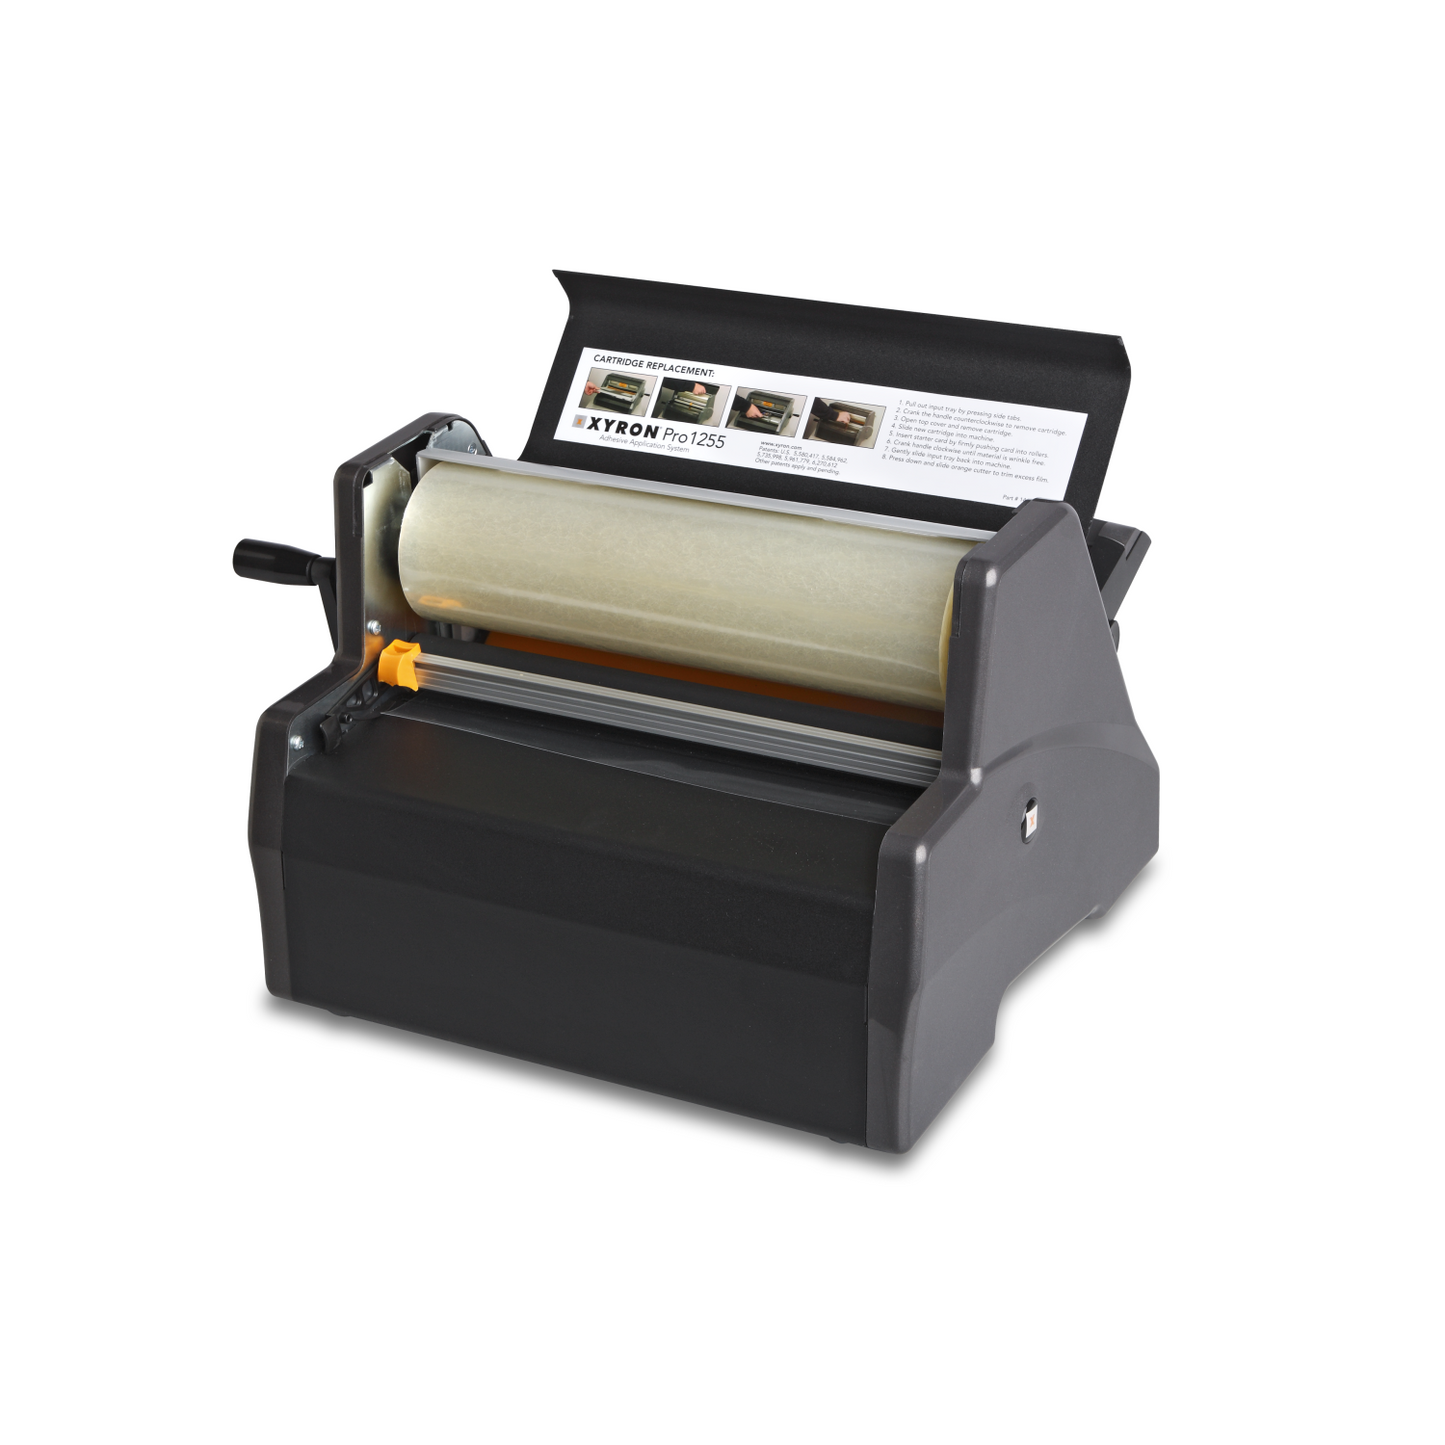 XyronPro® gluing and laminating machine 1255